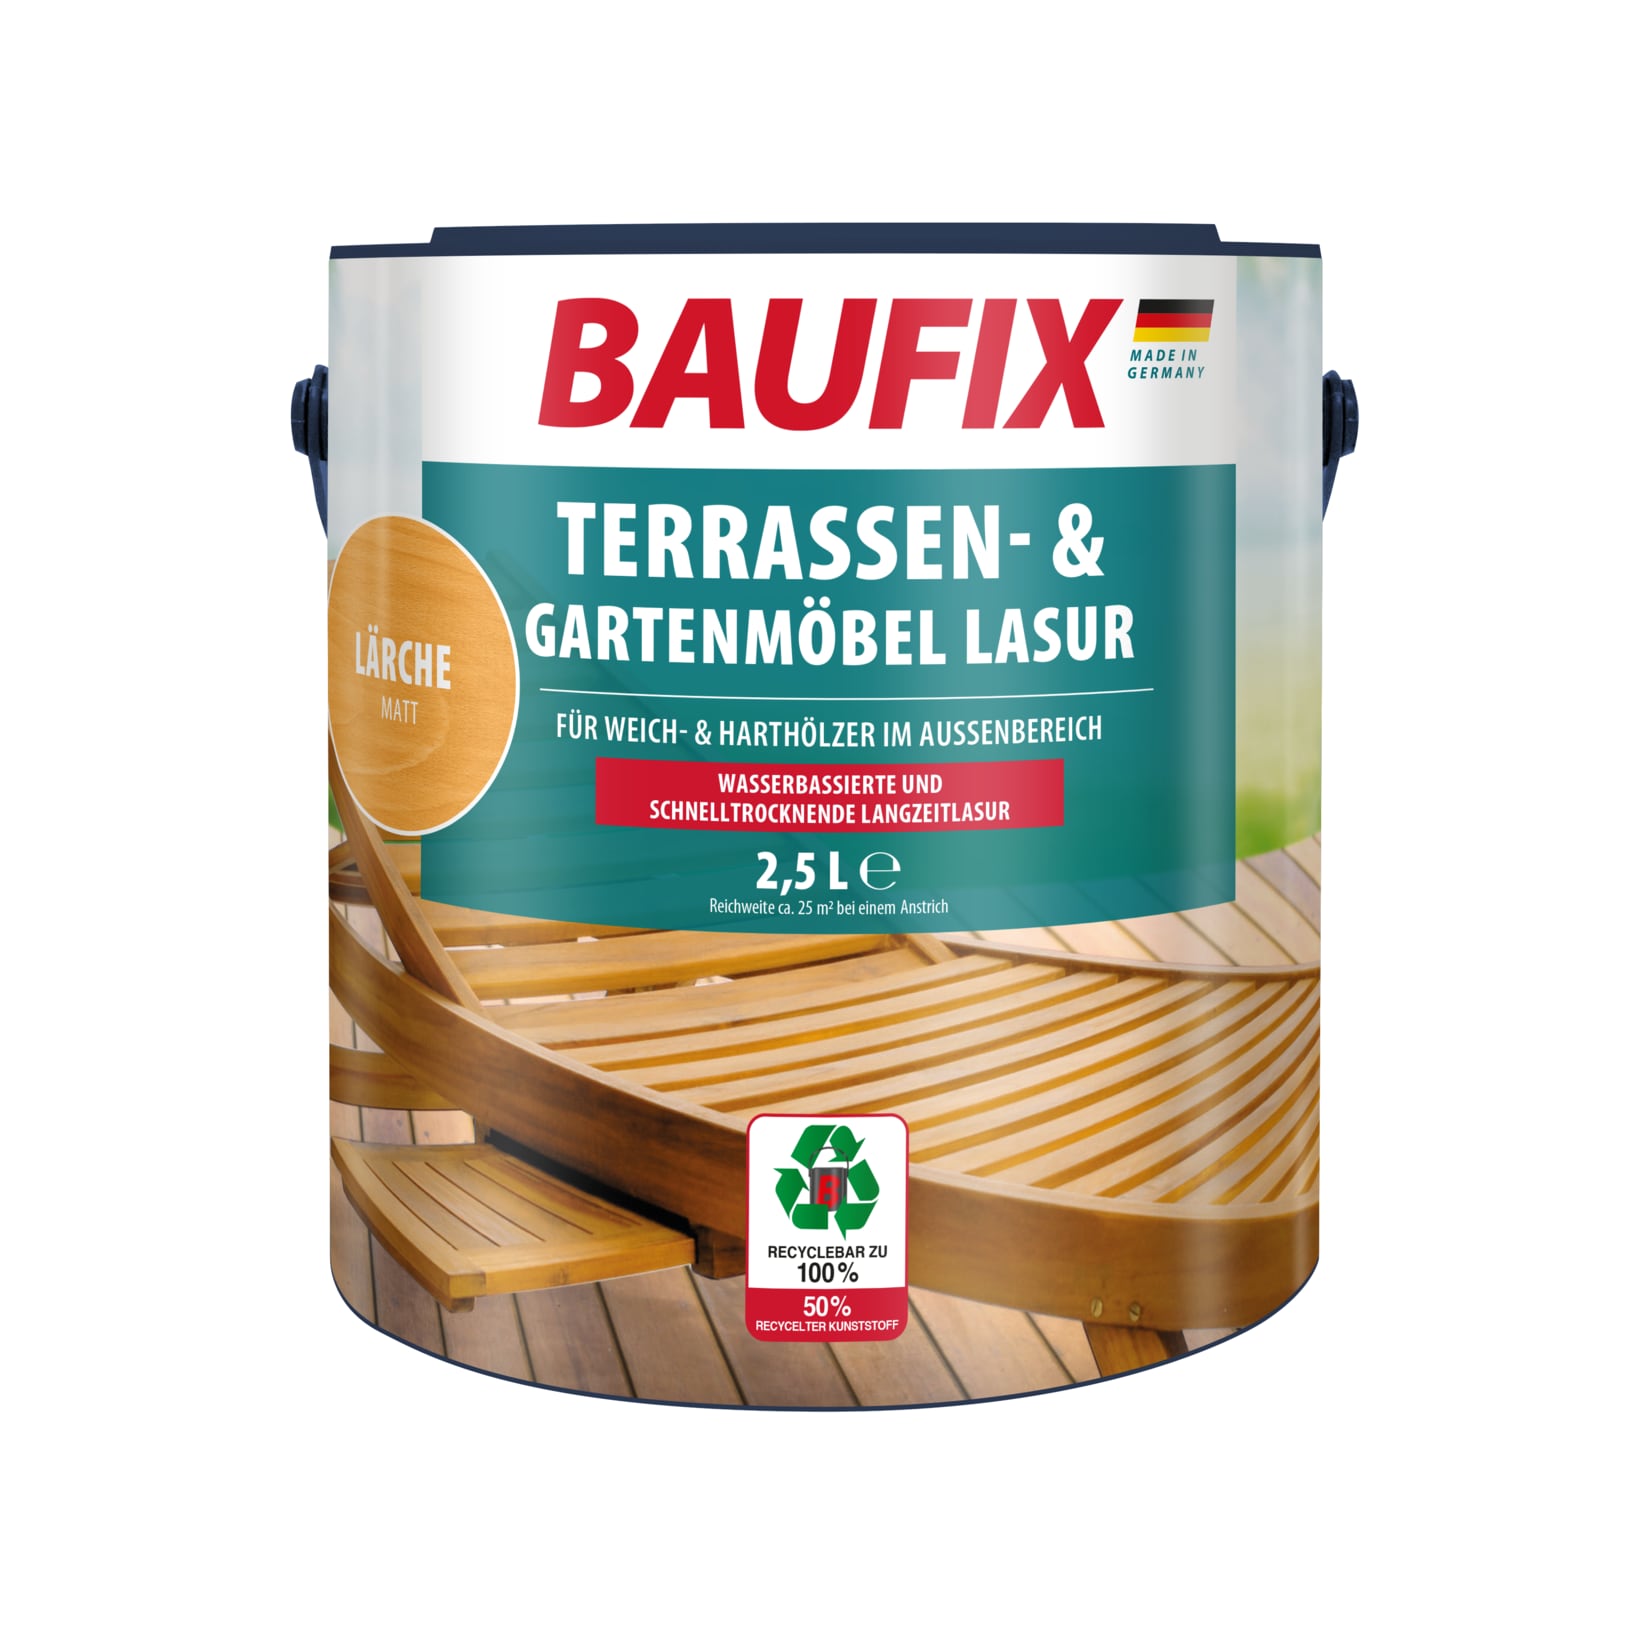 BAUFIX Terrassen- & Gartenmöbel-Lasur lärche matt, 2.5 Liter, Holzöl